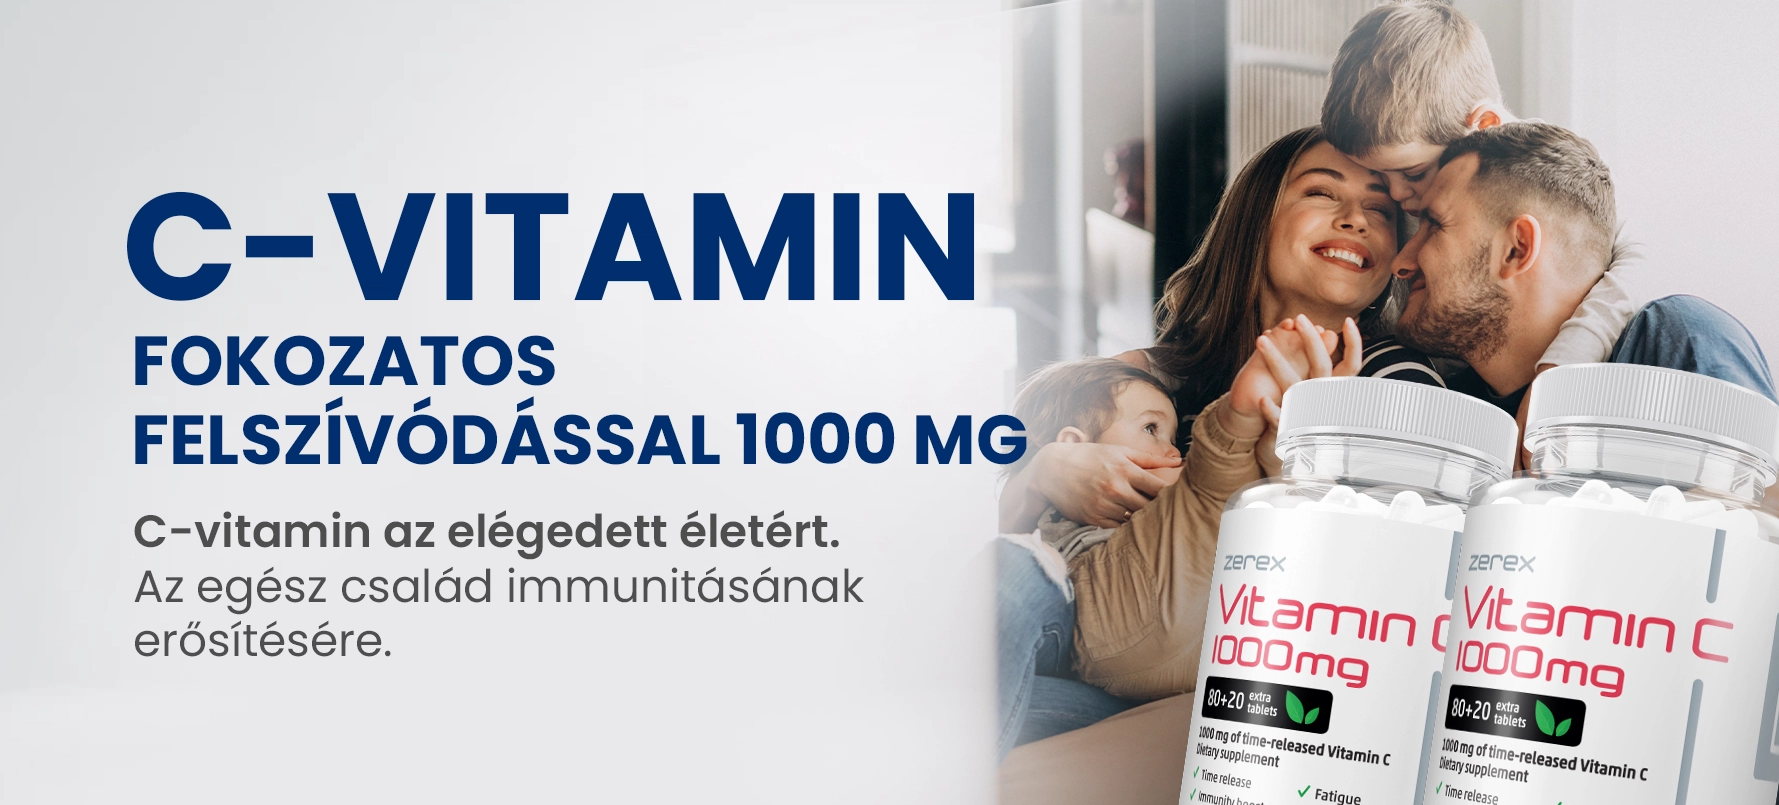 C-vitamin fokozatos felszívódással 1000 mg